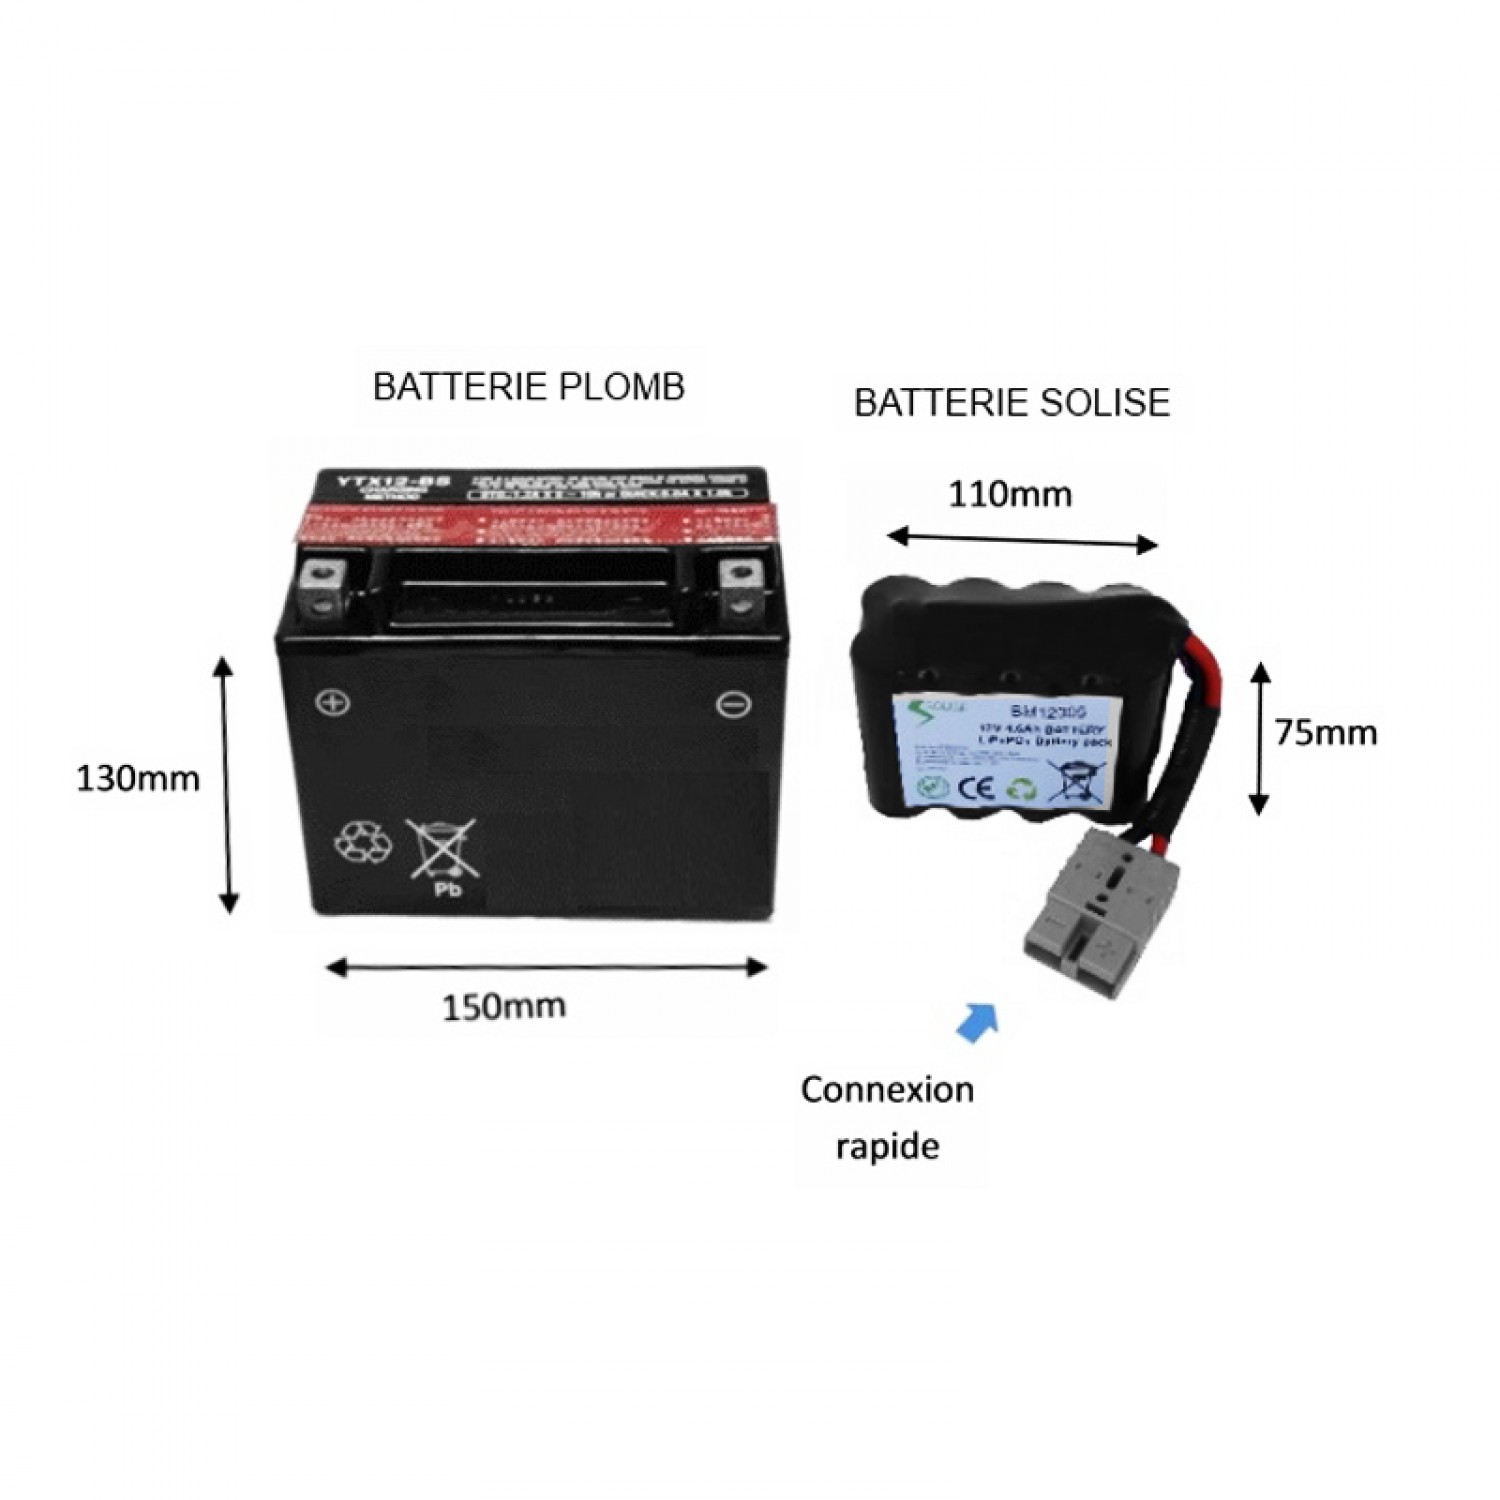 Batterie solise LiFePO4 (+ de 1200 cm3) Solise